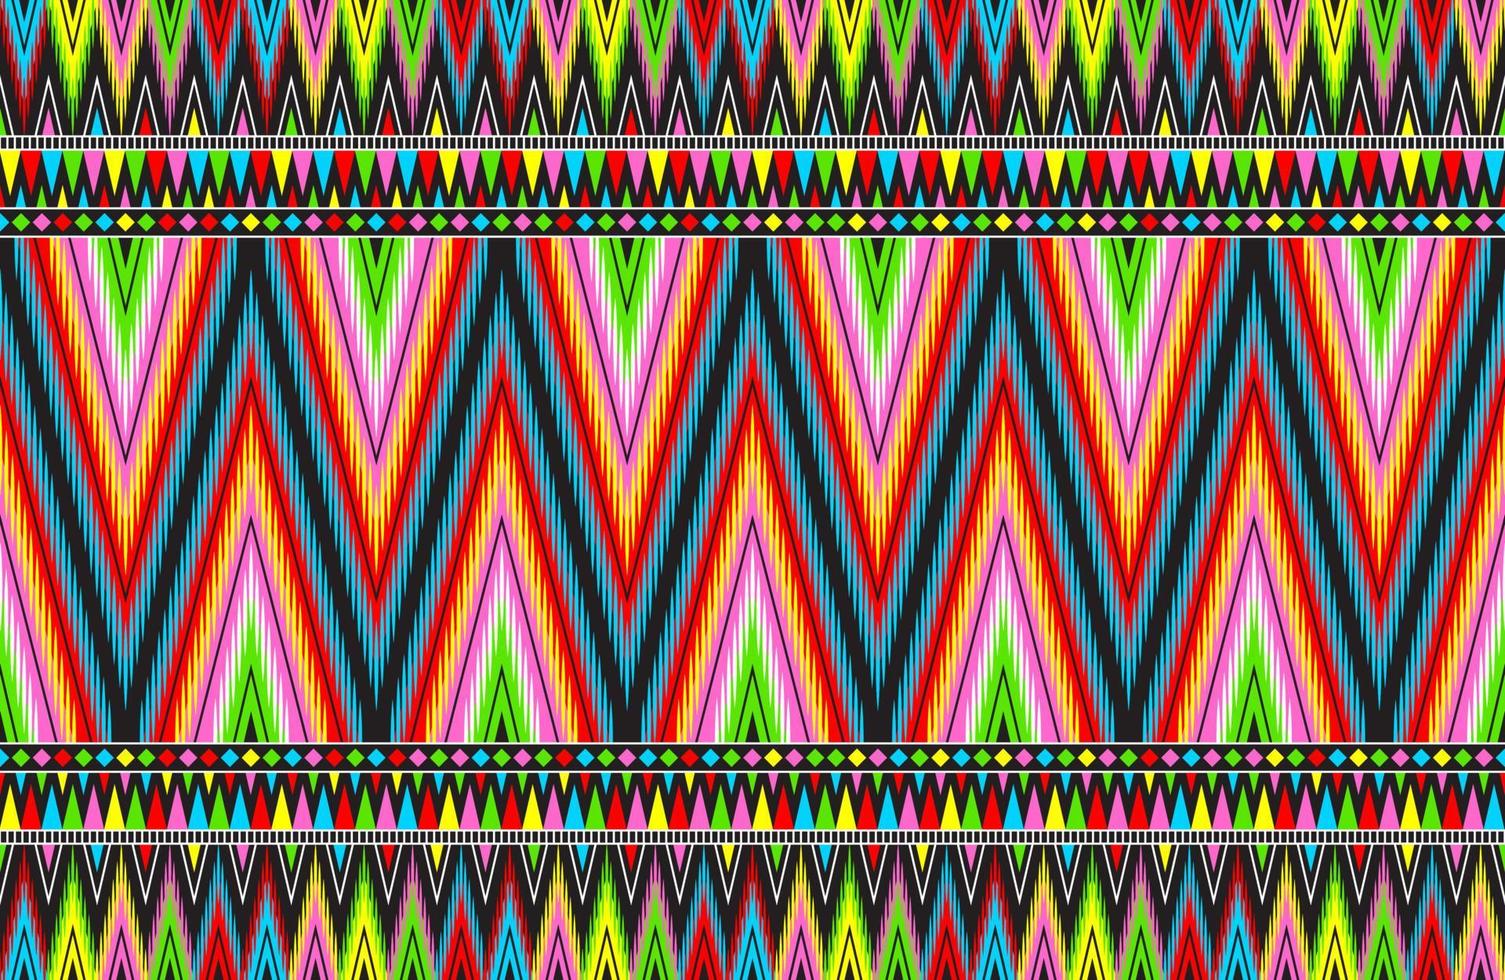 color lindo abstracto geométrico tribal étnico ikat folklore argyle patrón nativo oriental diseño tradicional para fondo, alfombra, papel tapiz, ropa, tela, envoltura, impresión, batik, folk, tejer, vector de rayas